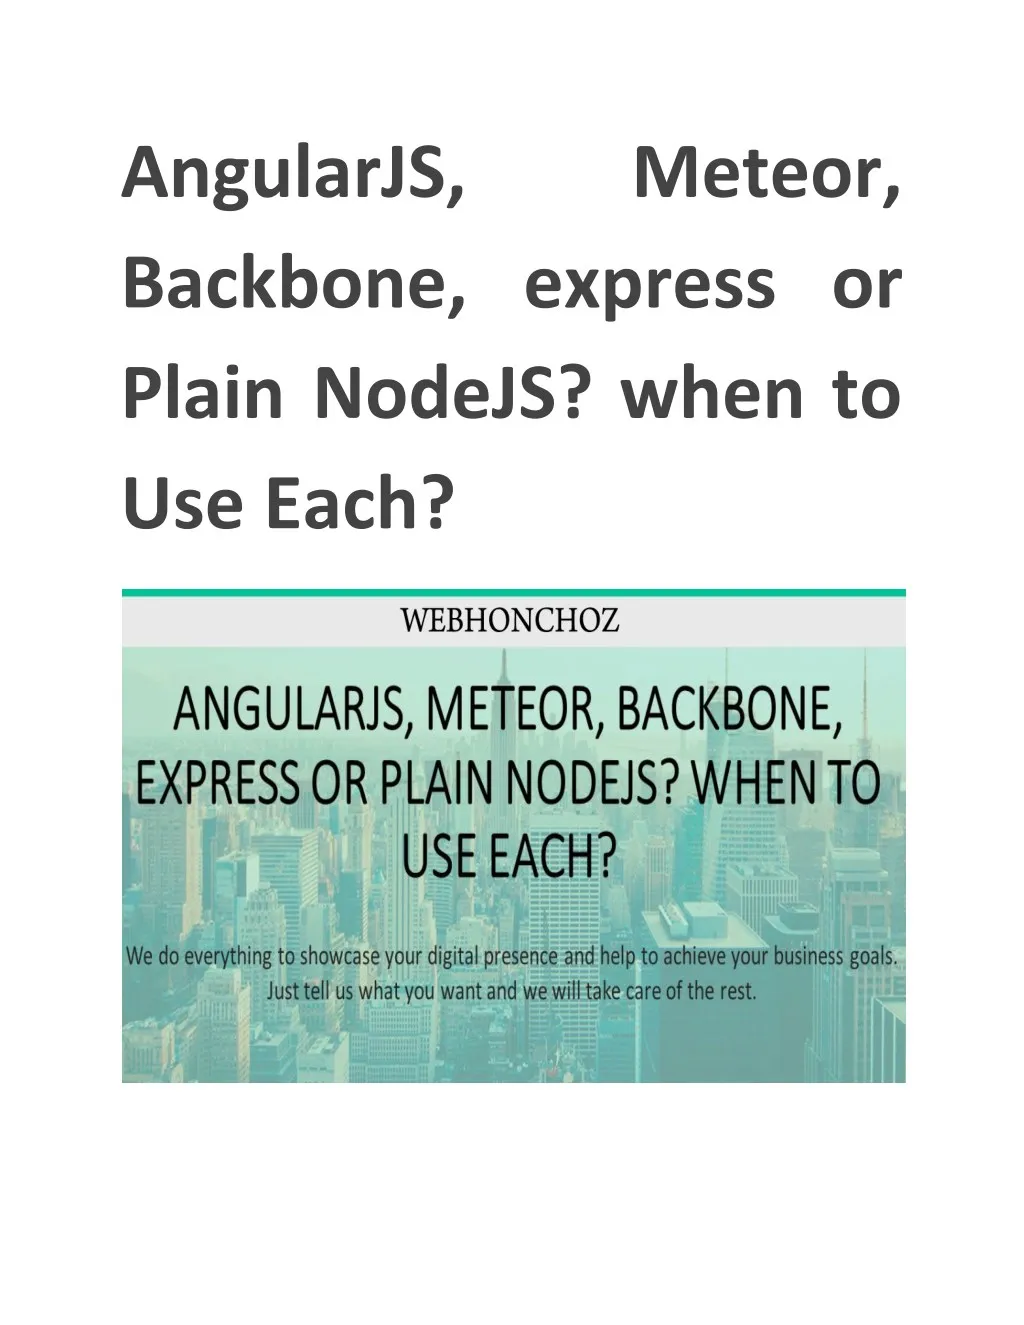 angularjs backbone express or plain nodejs when